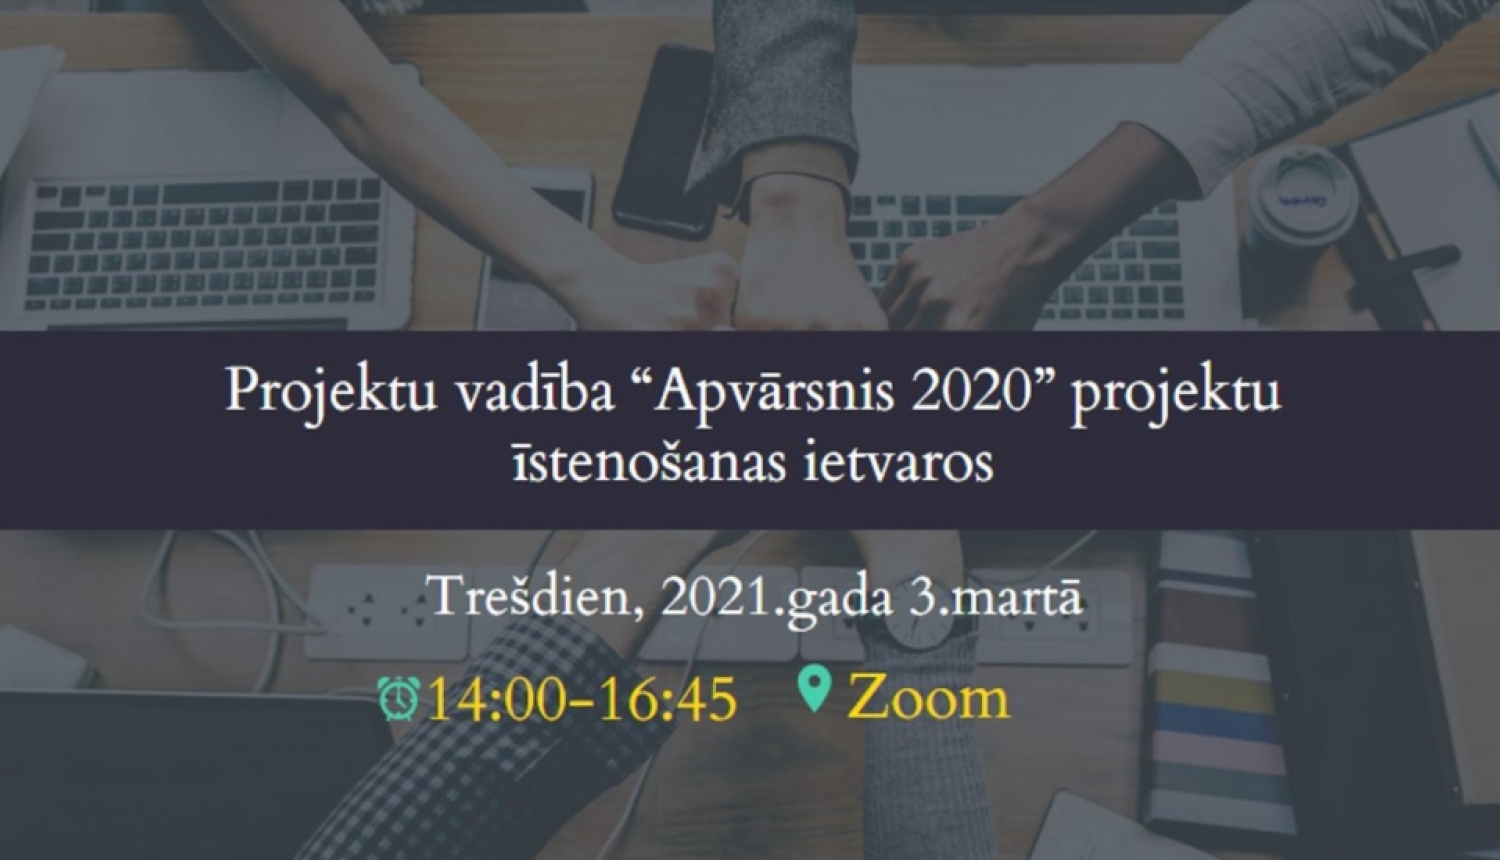 Apvārsnis 2020 projektu īstenotāji dalīsies pieredzē